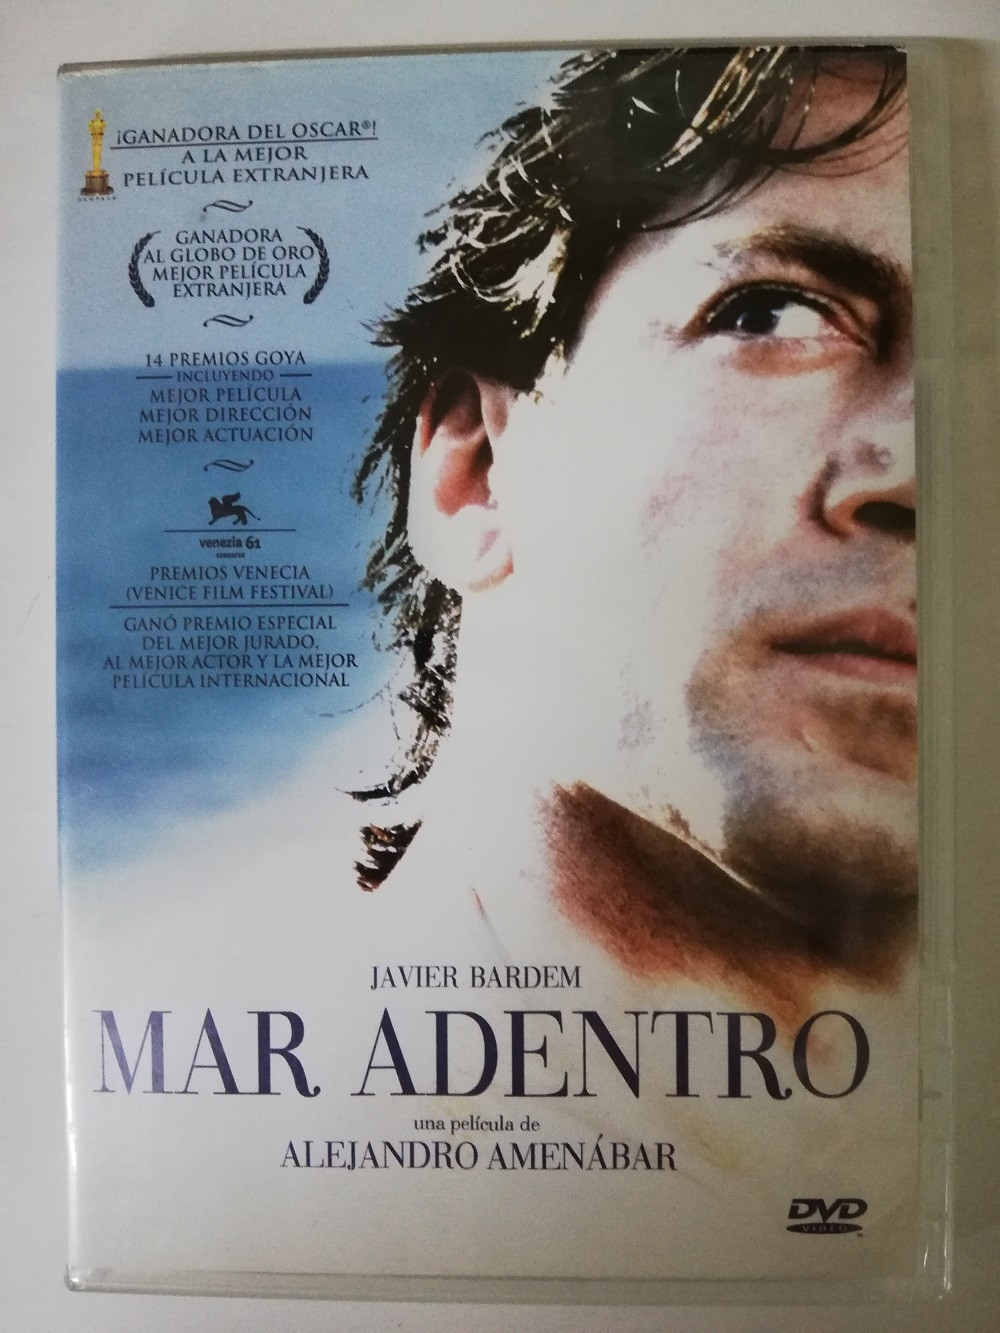 Imagen PELICULA DVD MAR ADENTRO - ALEJANDRO AMENÁBAR